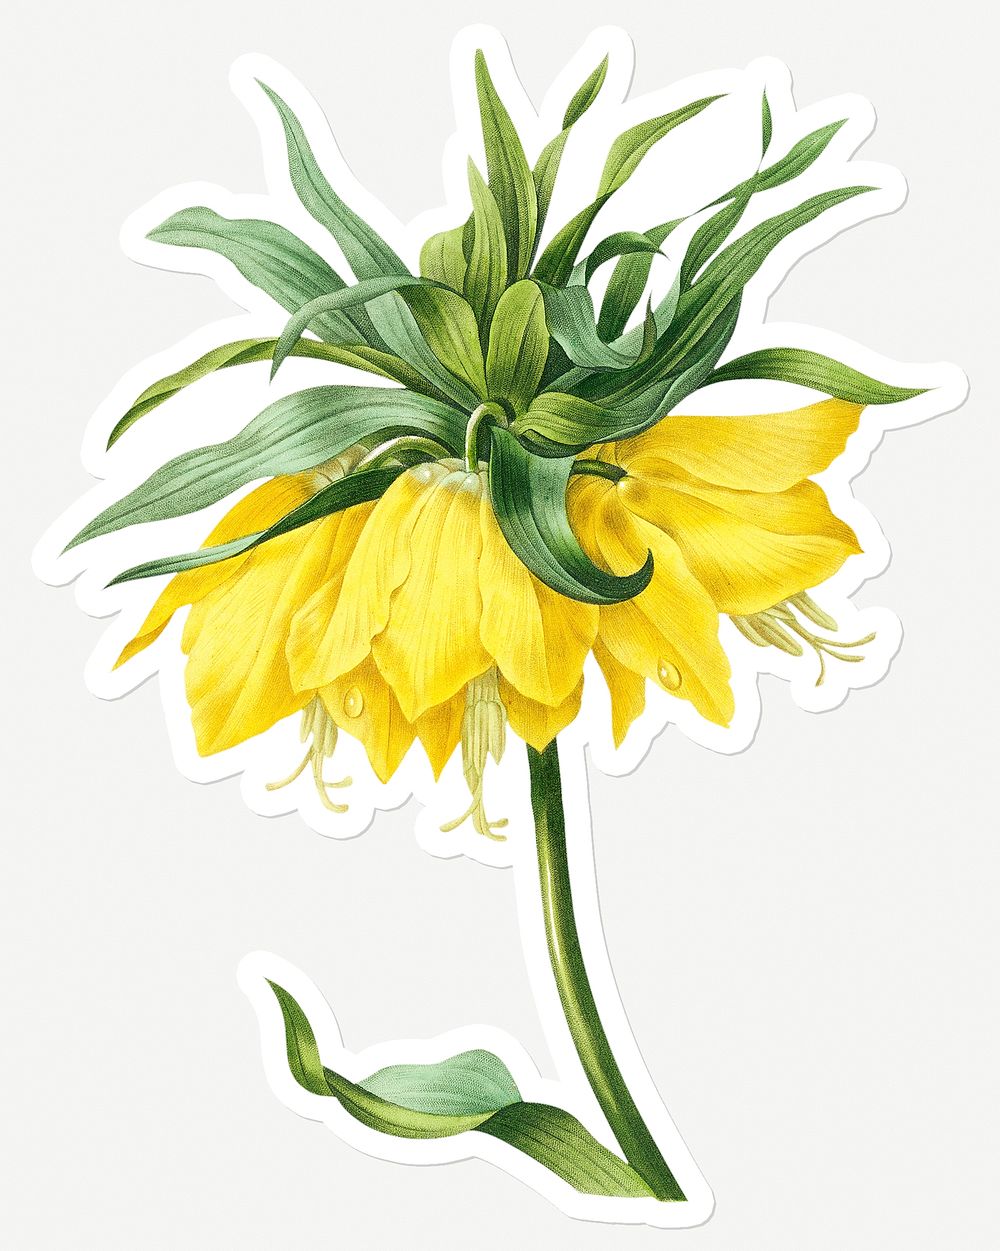 Kaiser's crown flower sticker design resource